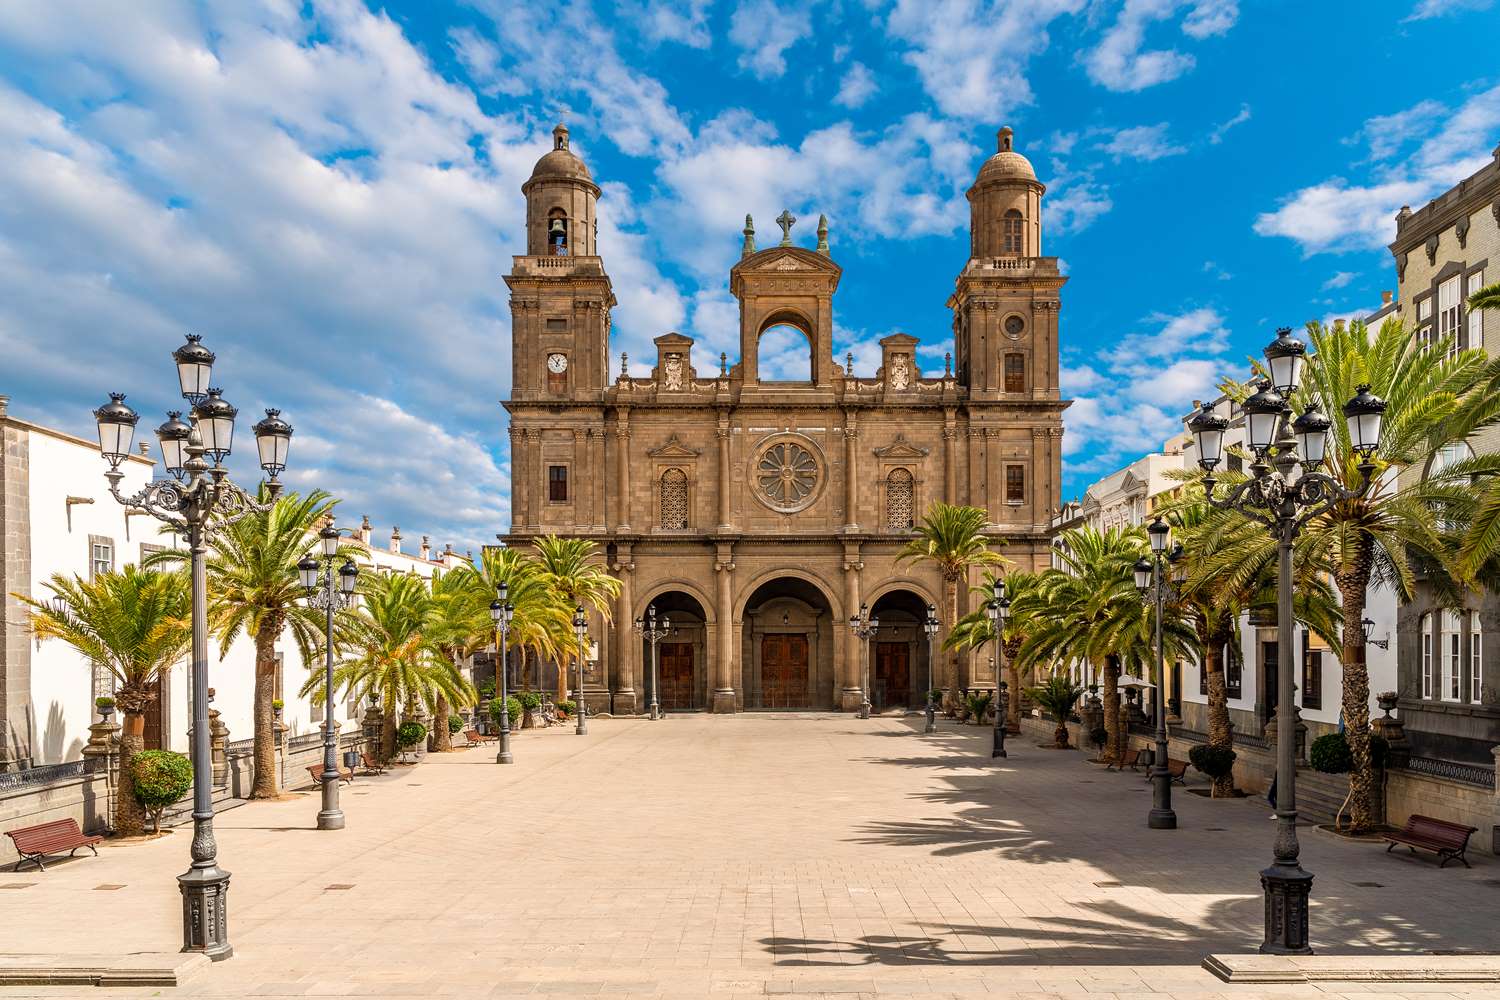 Katedralen Santa Ana i gamlebyen Vegueta i Las Palmas på Gran Canaria. Vakre palmetrær på utsiden og blå himmel.